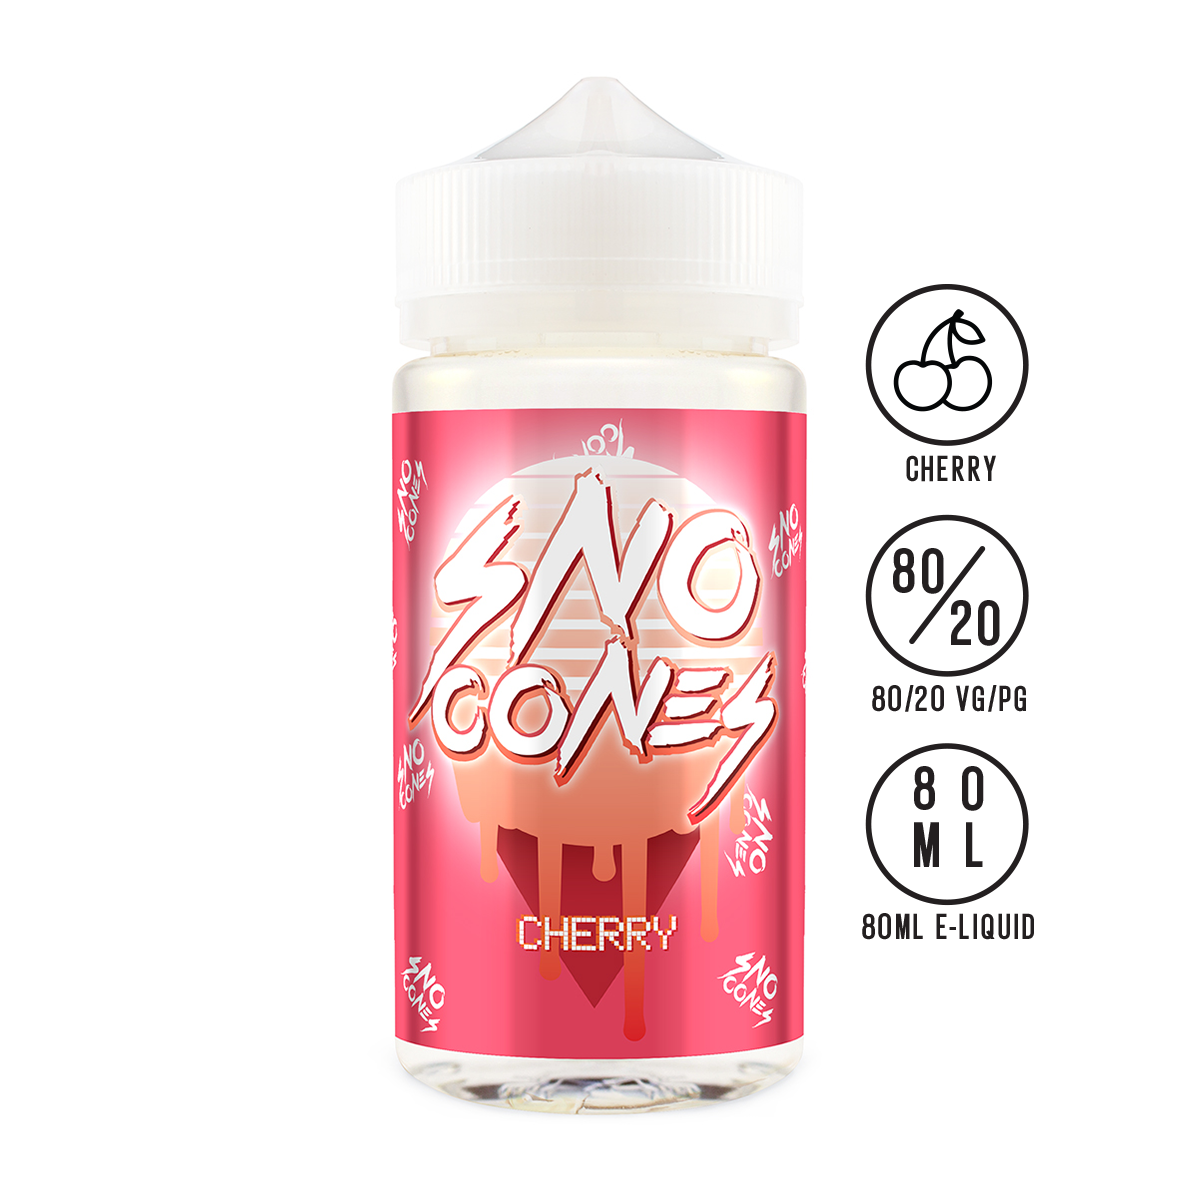 Sno Cones - Cherry 80ML - The Ace Of Vapez